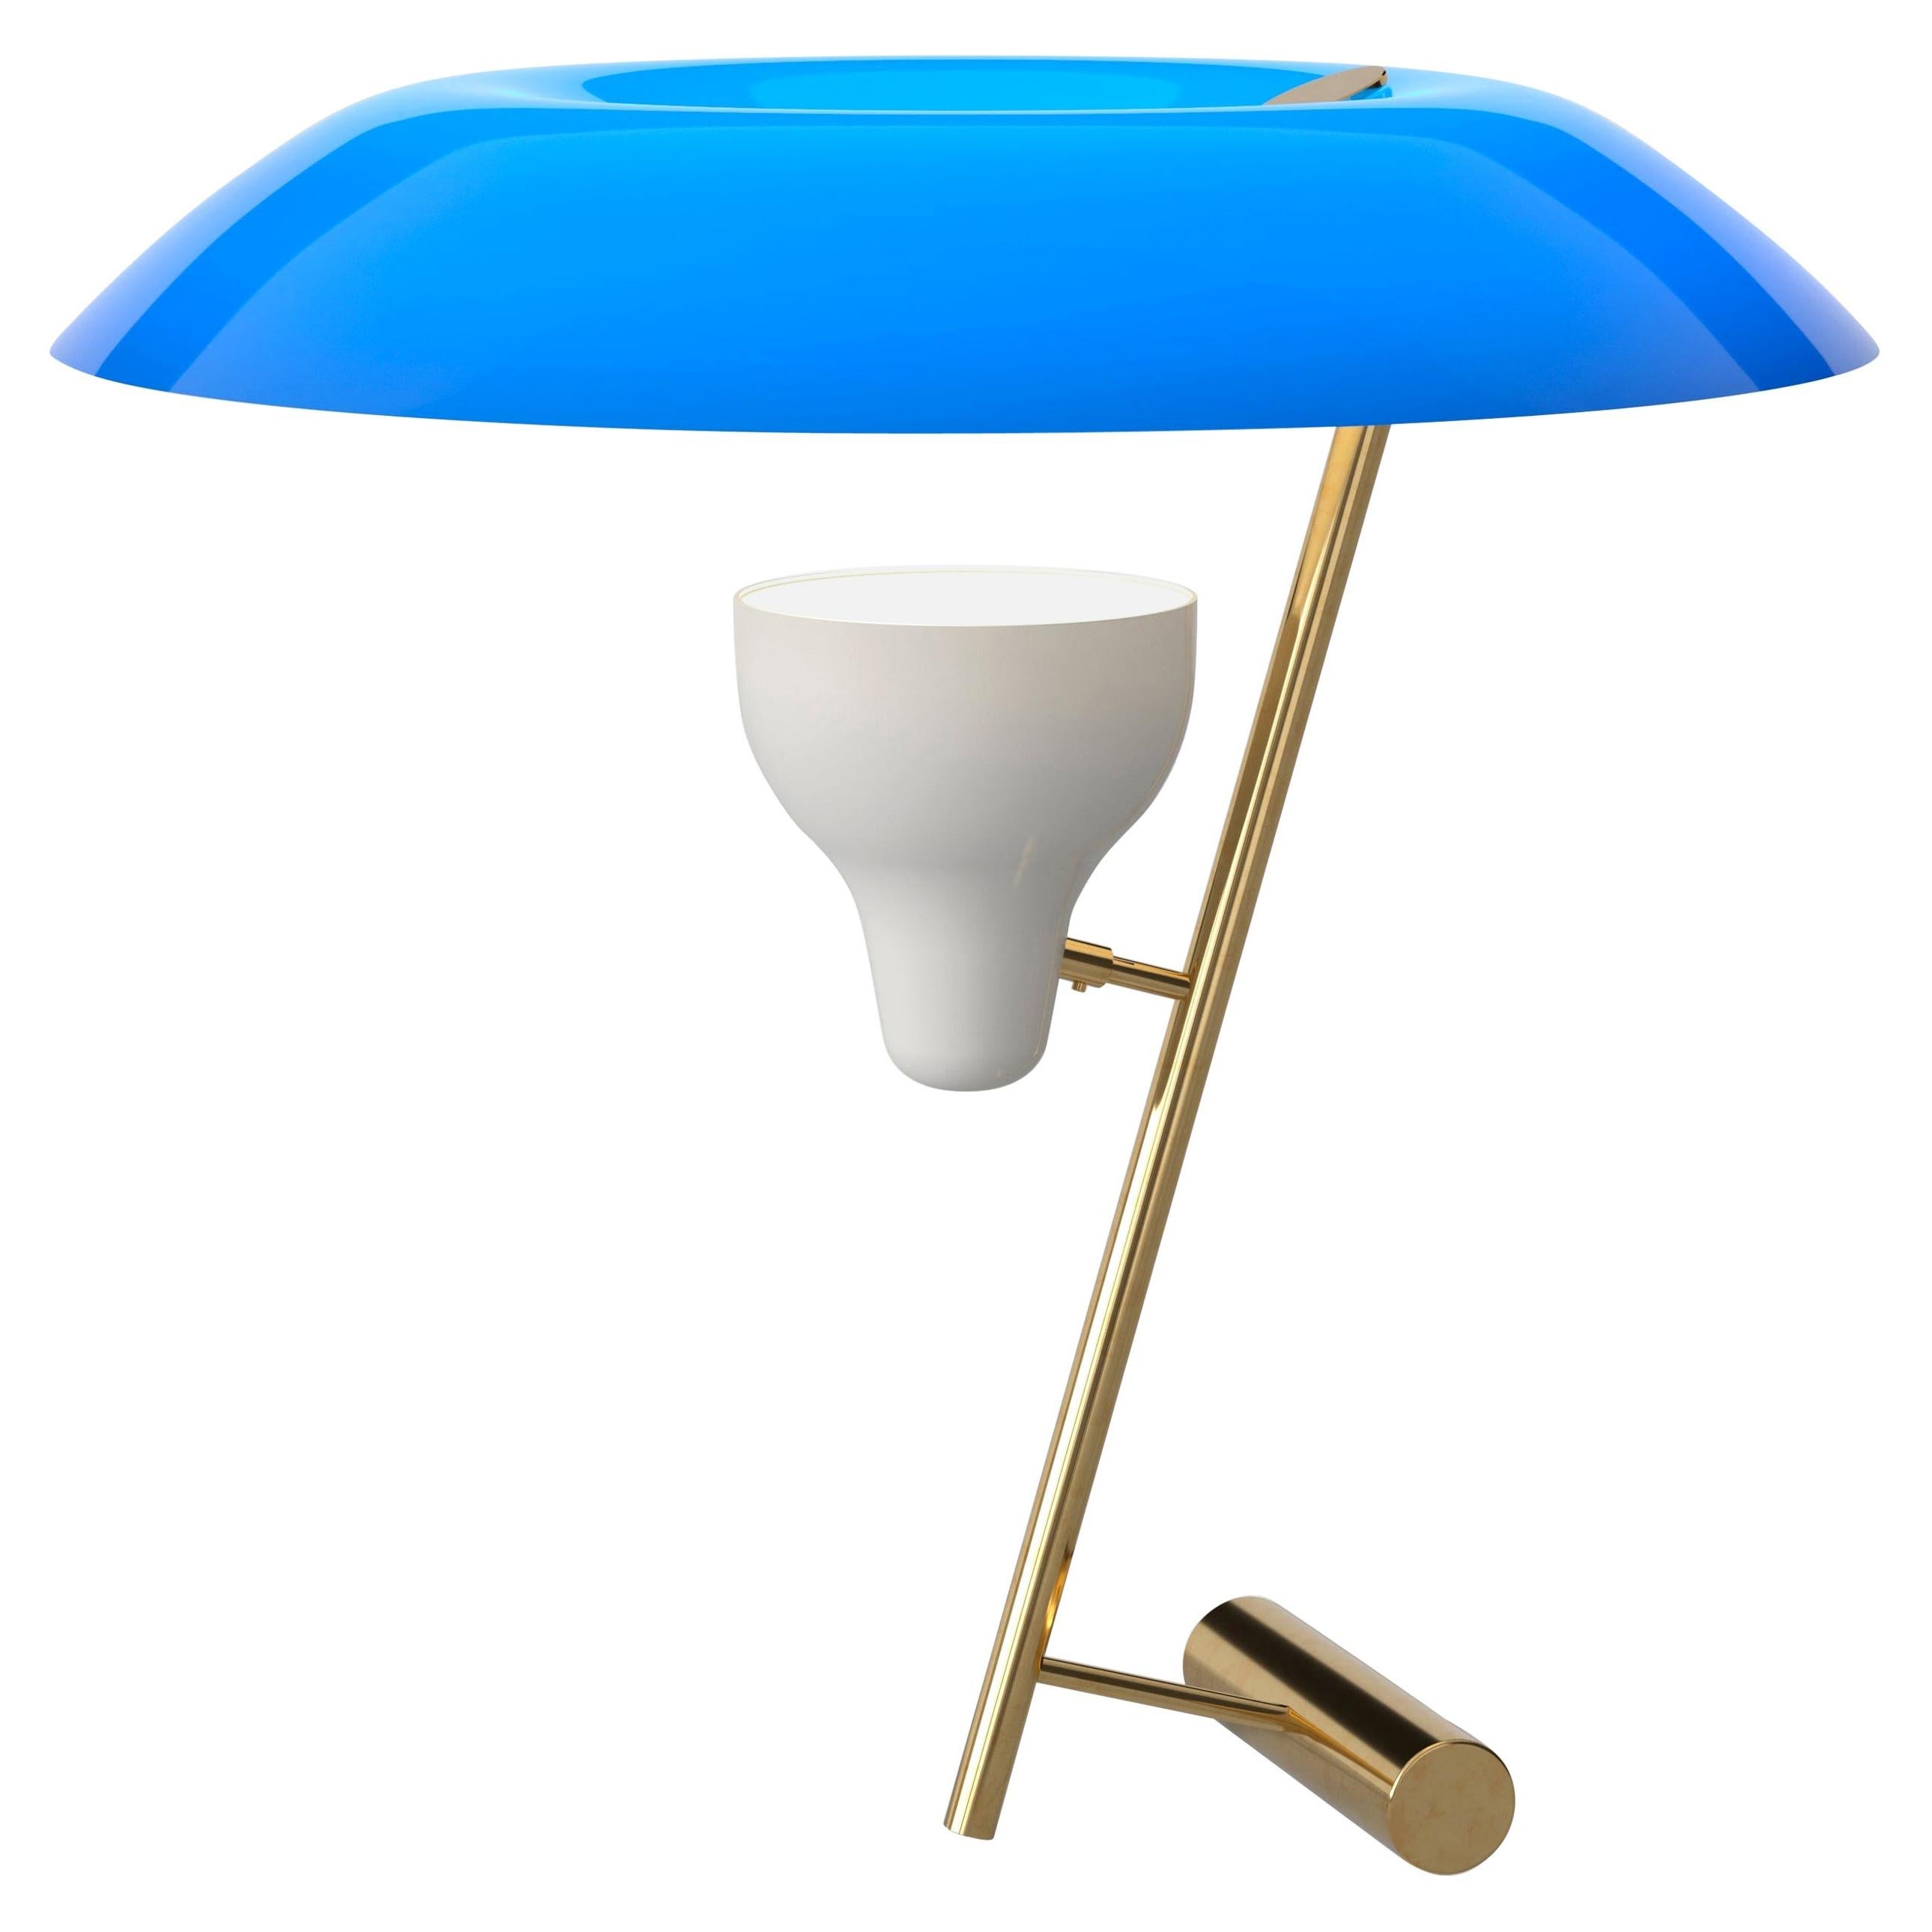 Gino Sarfatti-Lampe Modell 548, poliertes Messing mit blauem Futter von Astep